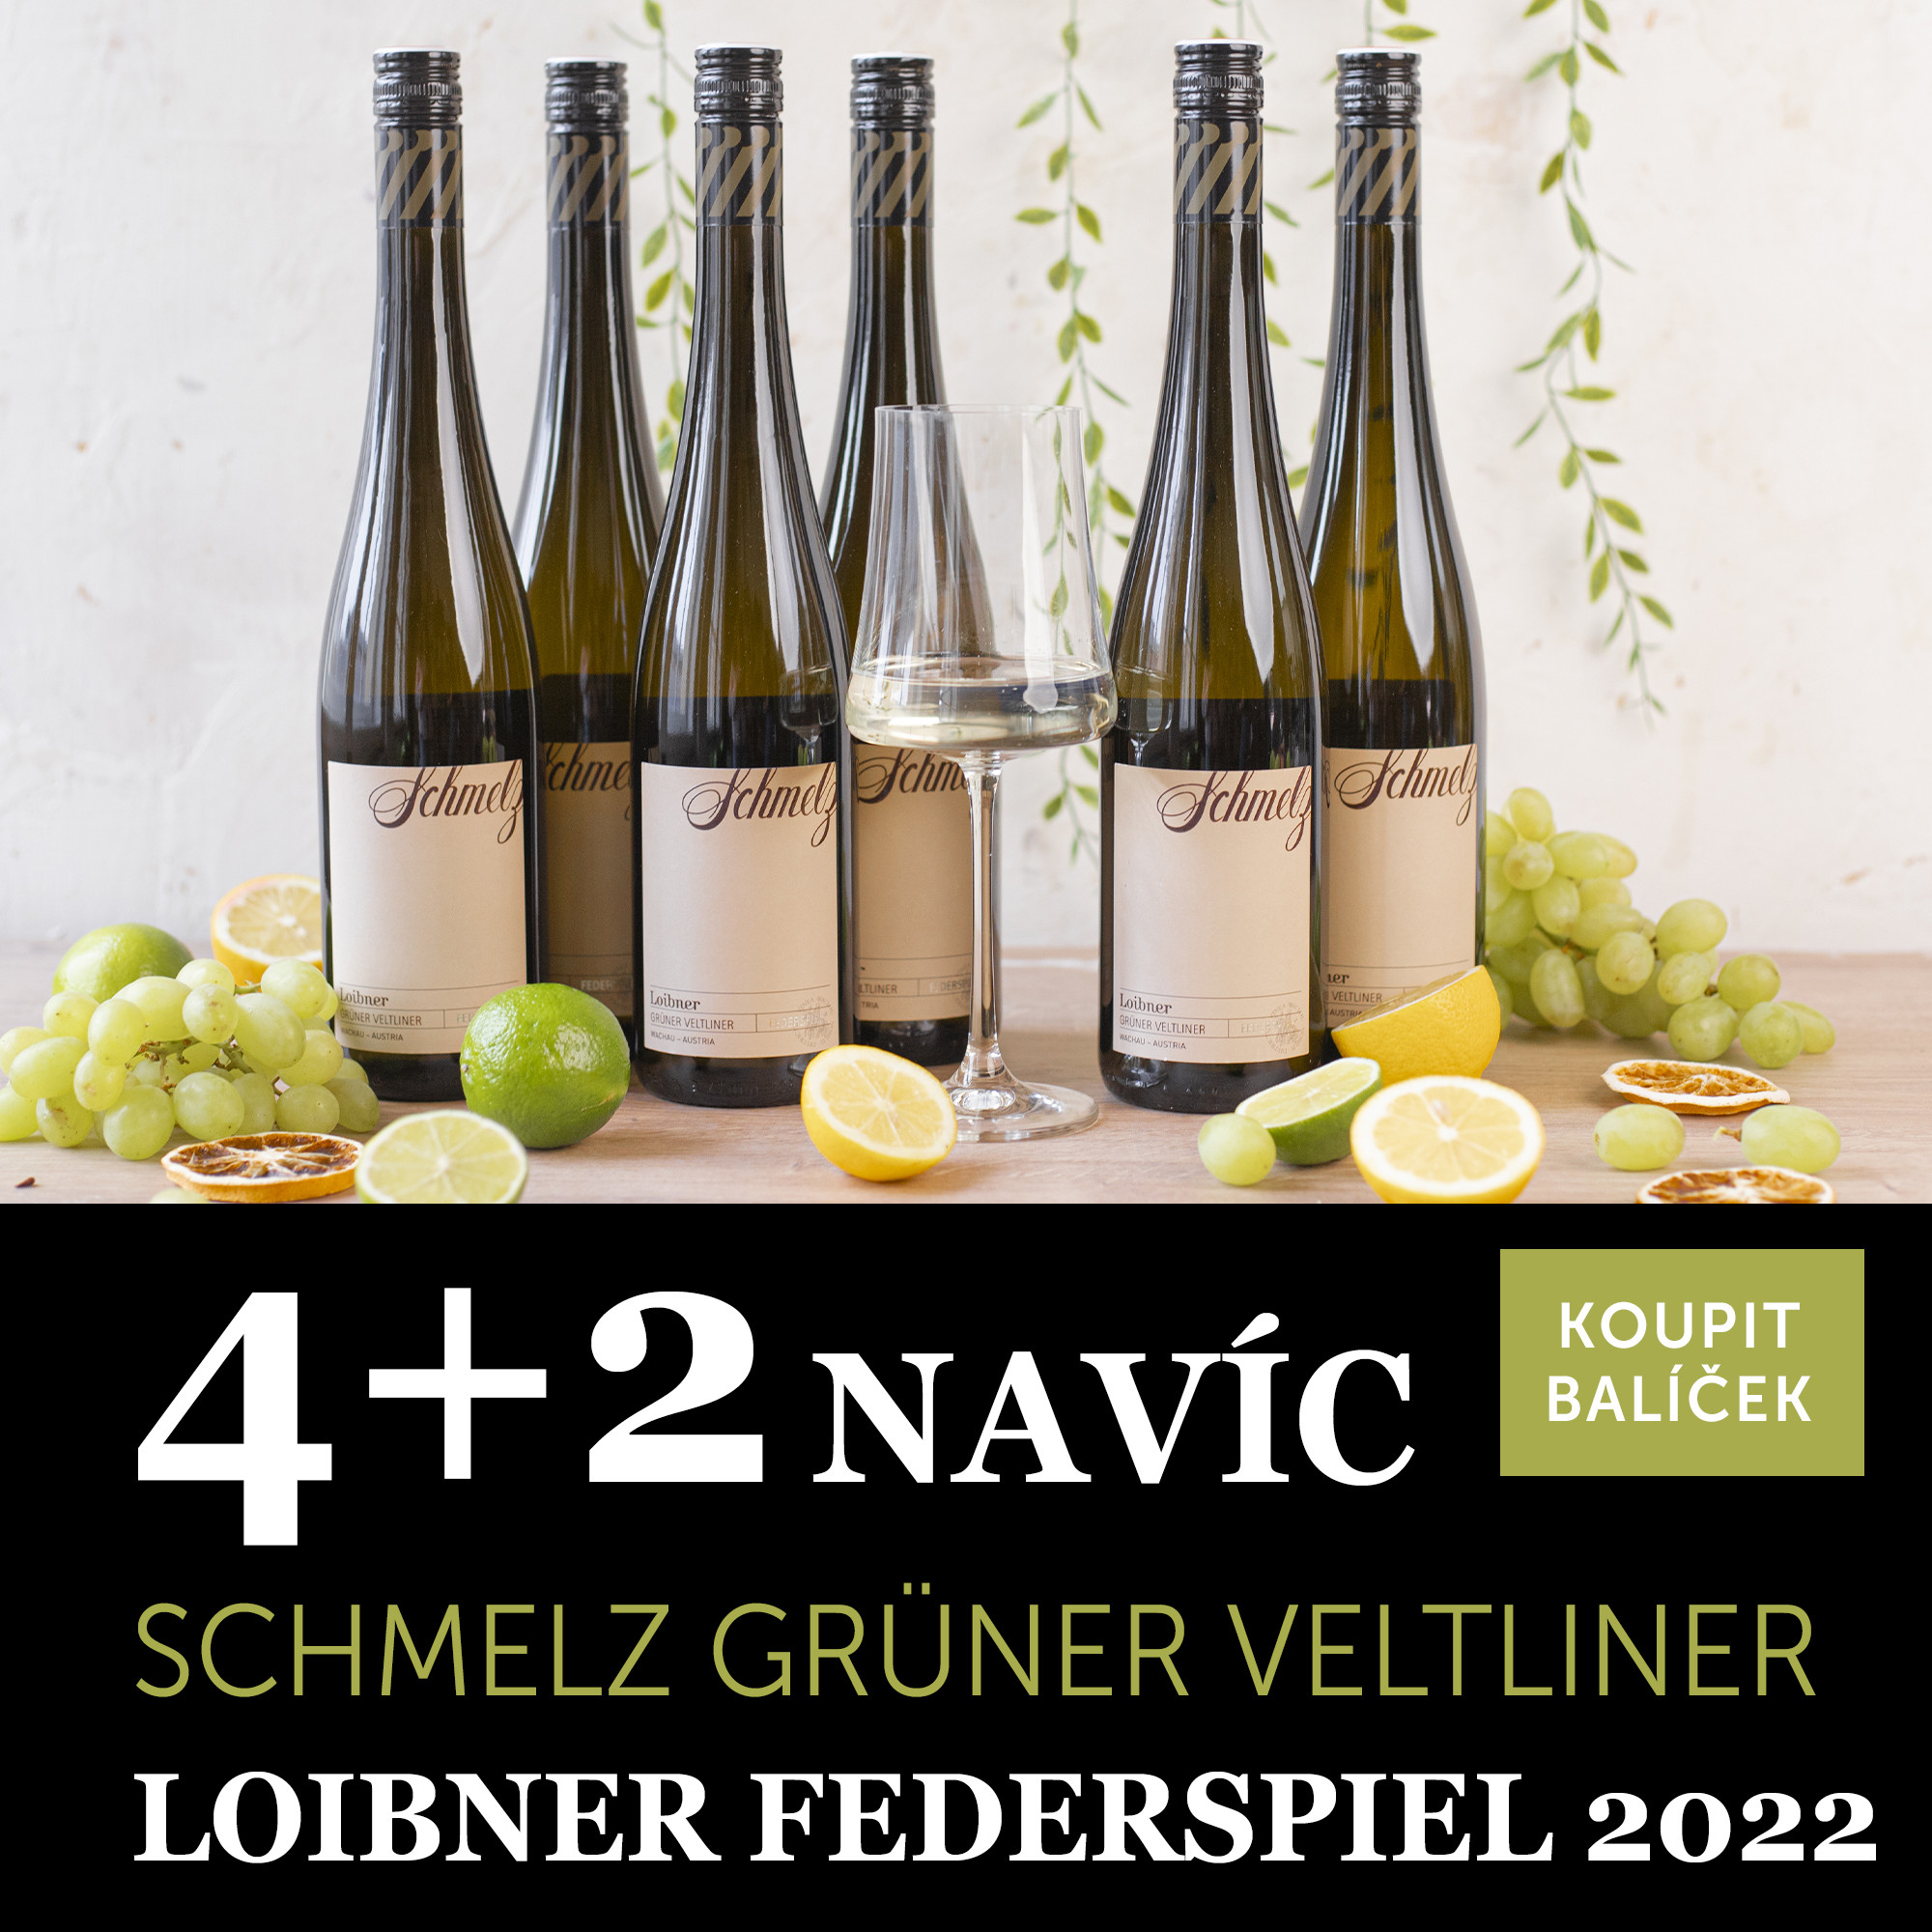 Víno měsíce května - Schmelz Grüner Veltliner Loibner Federspiel 2022 4+2 navíc